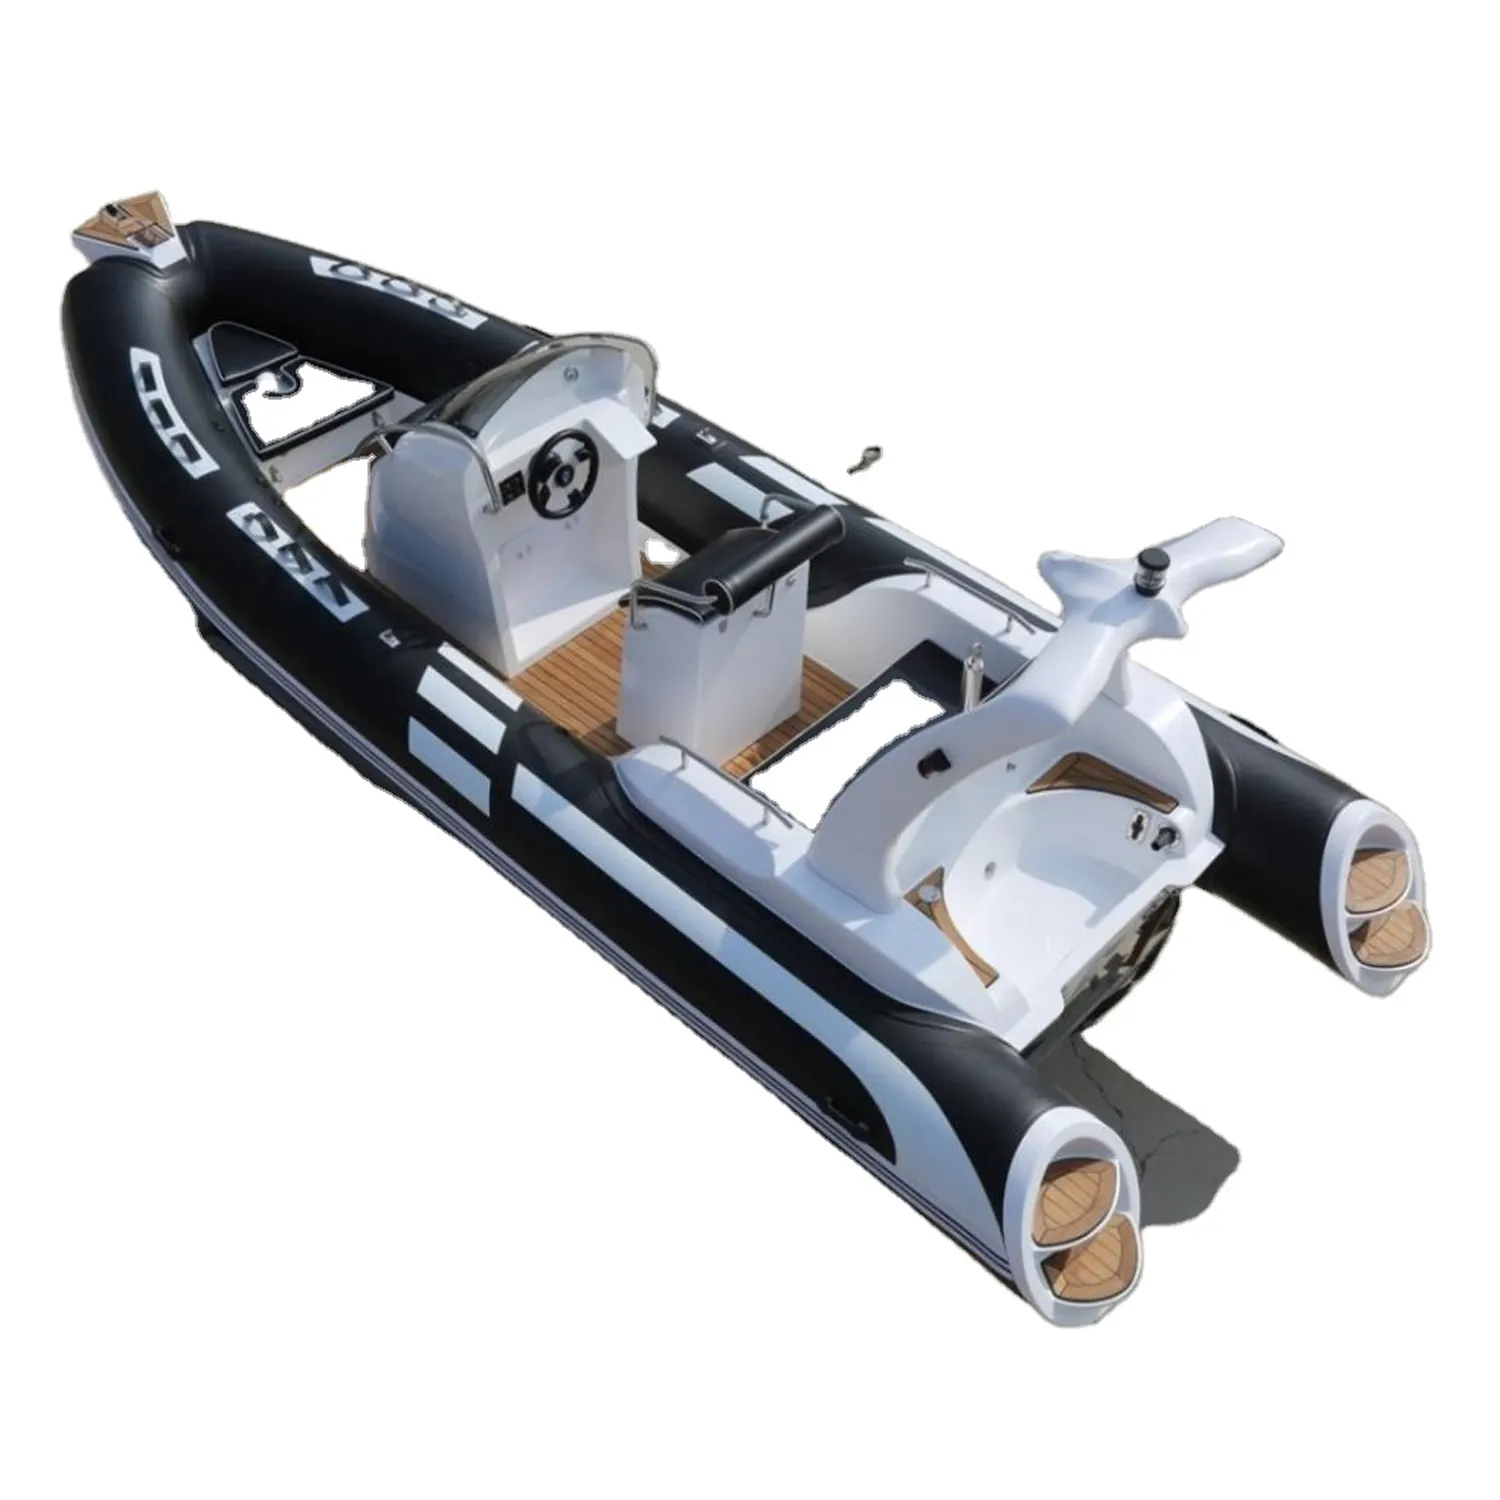 Small Rigid Hull Fiberglass Inflatable Boat